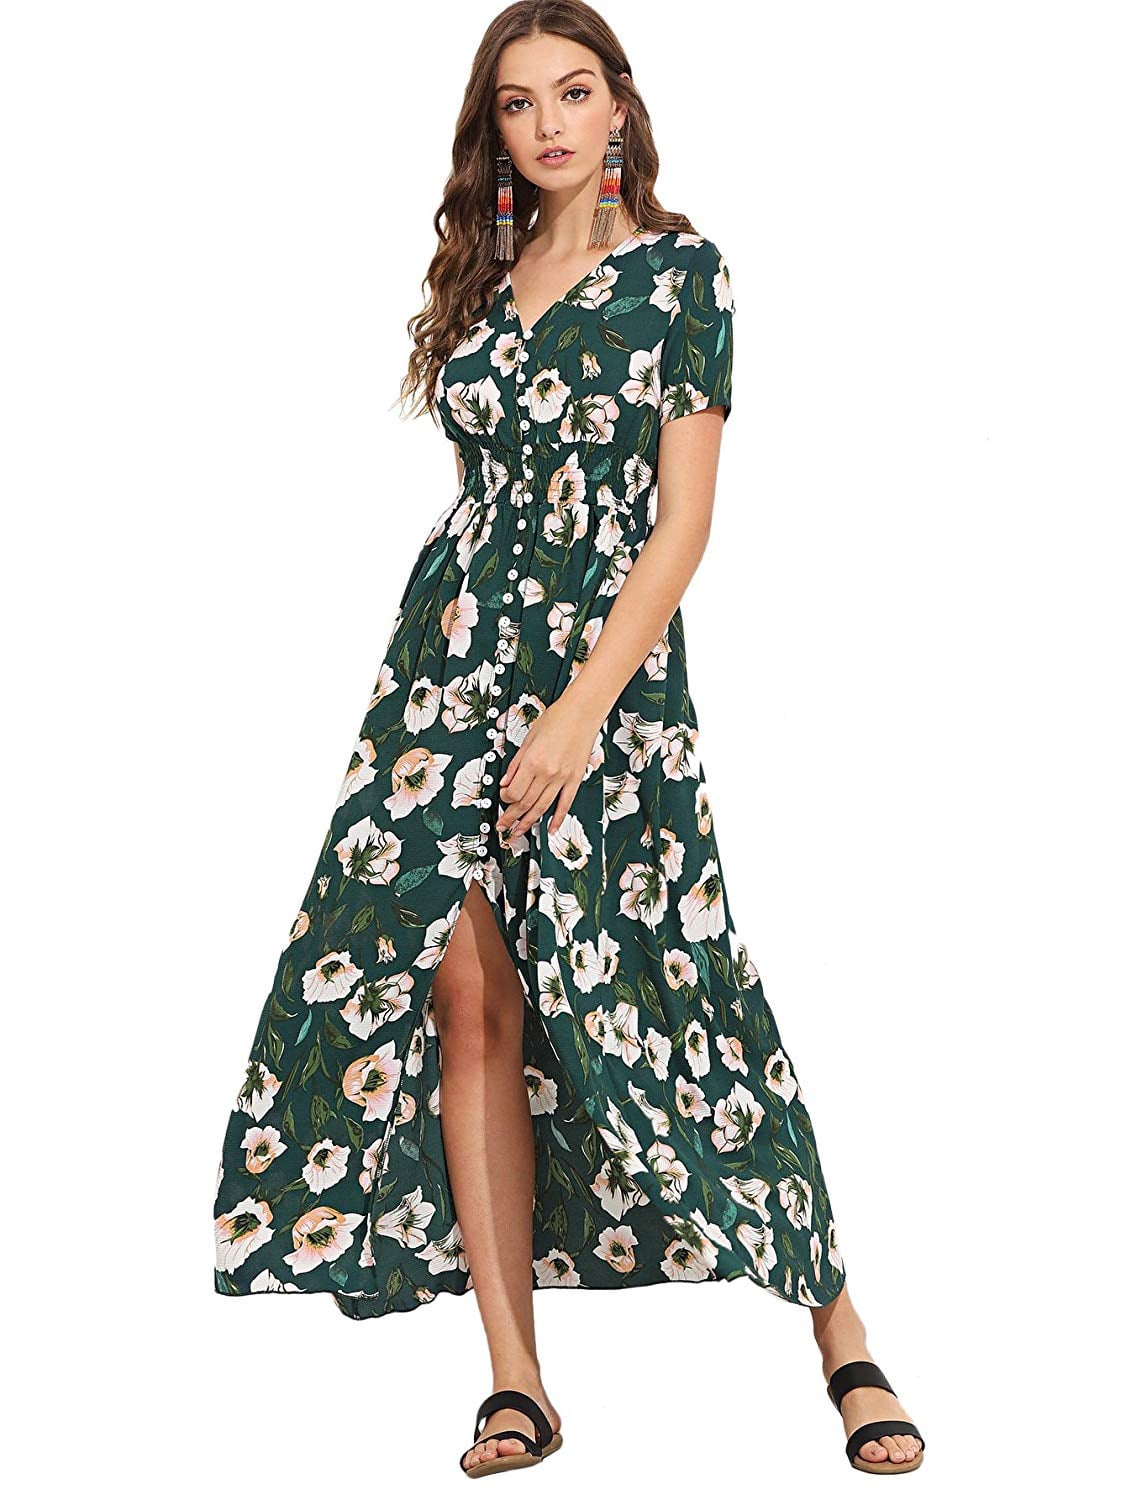 Bestselling Maxi Dress on Amazon | POPSUGAR Fashion UK